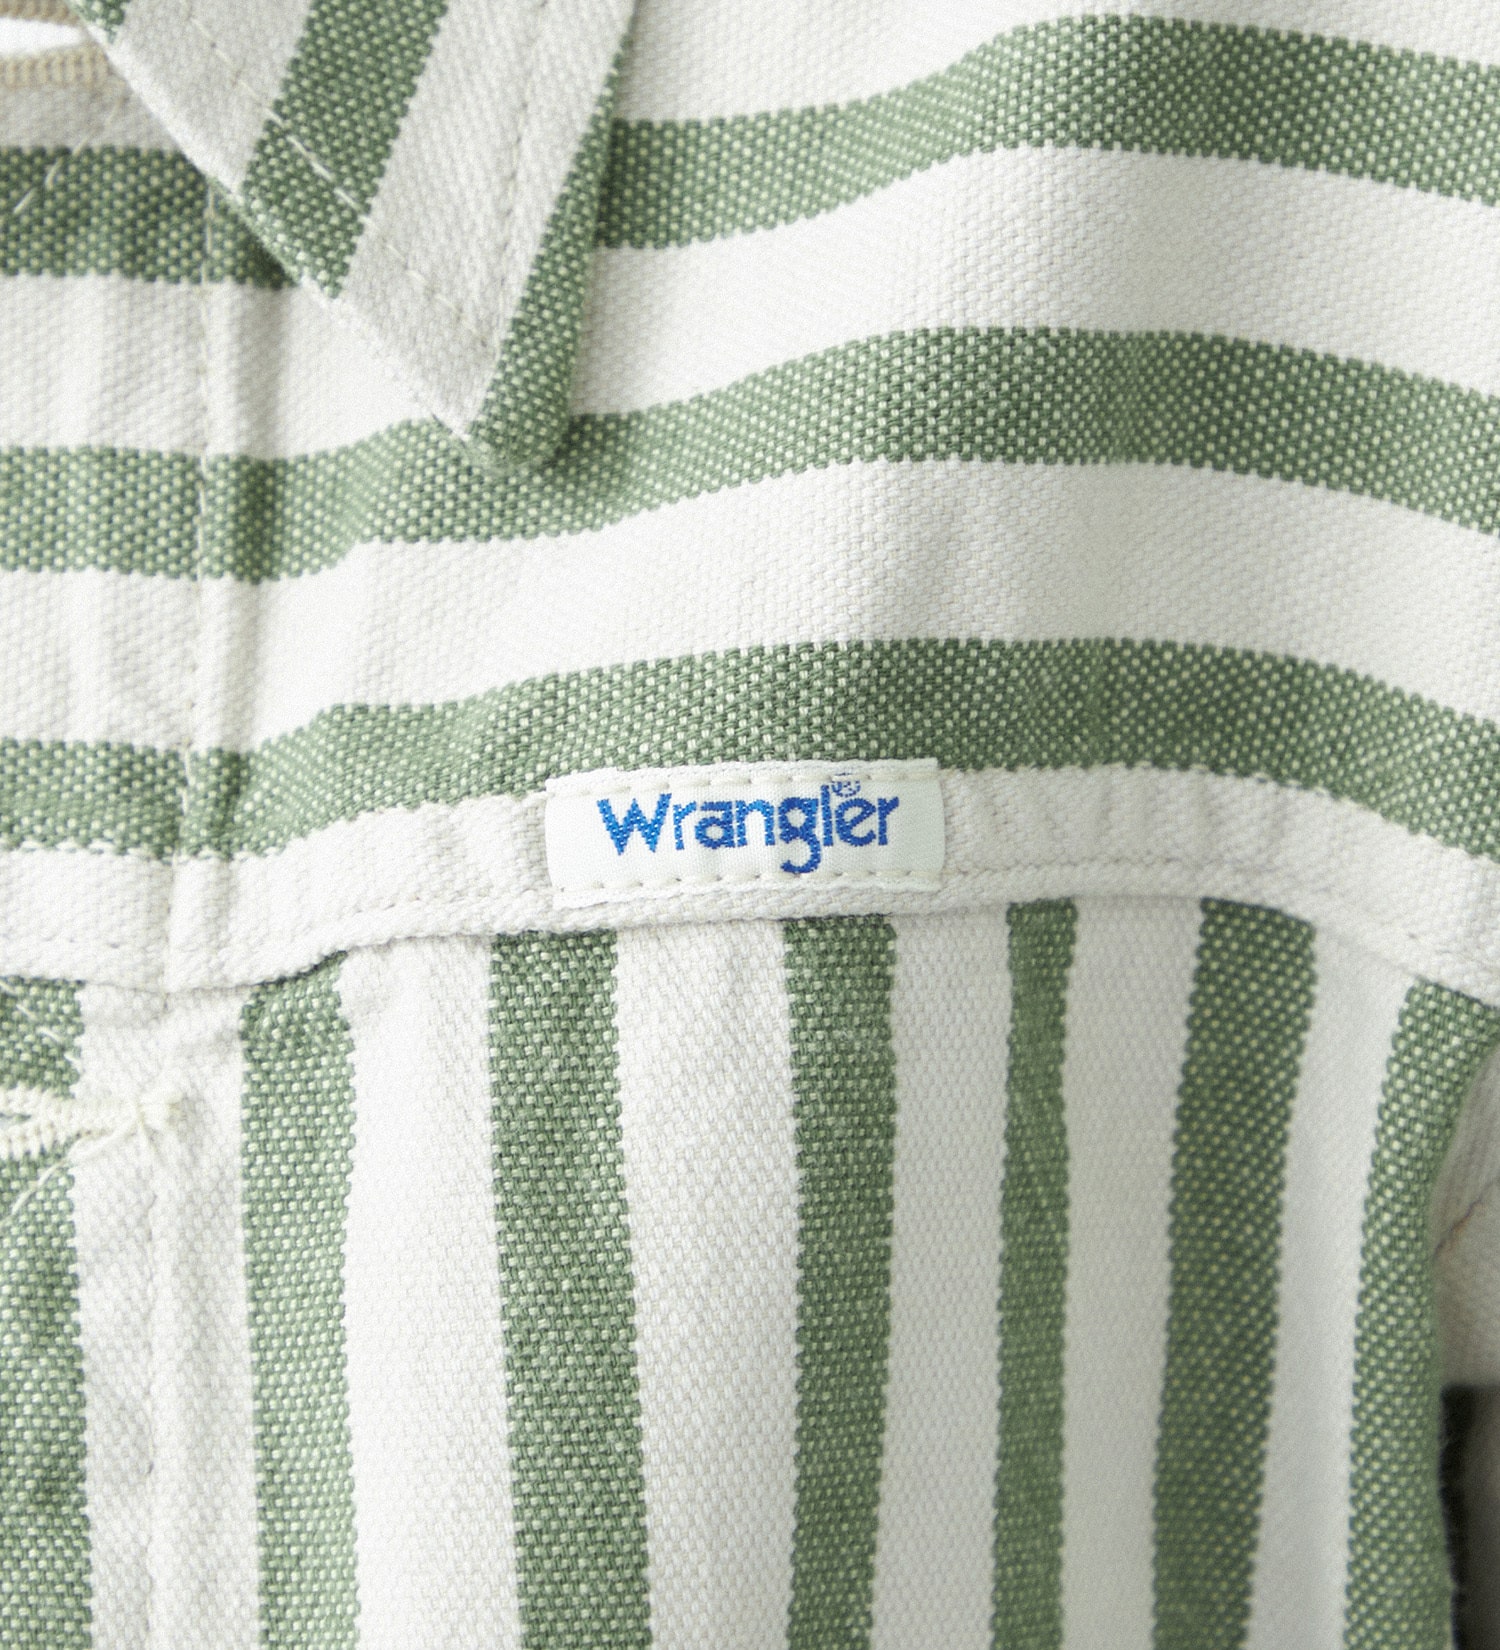 Wrangler(ラングラー)のコンパクト ジャケット|ジャケット/アウター/その他アウター/レディース|グリーン